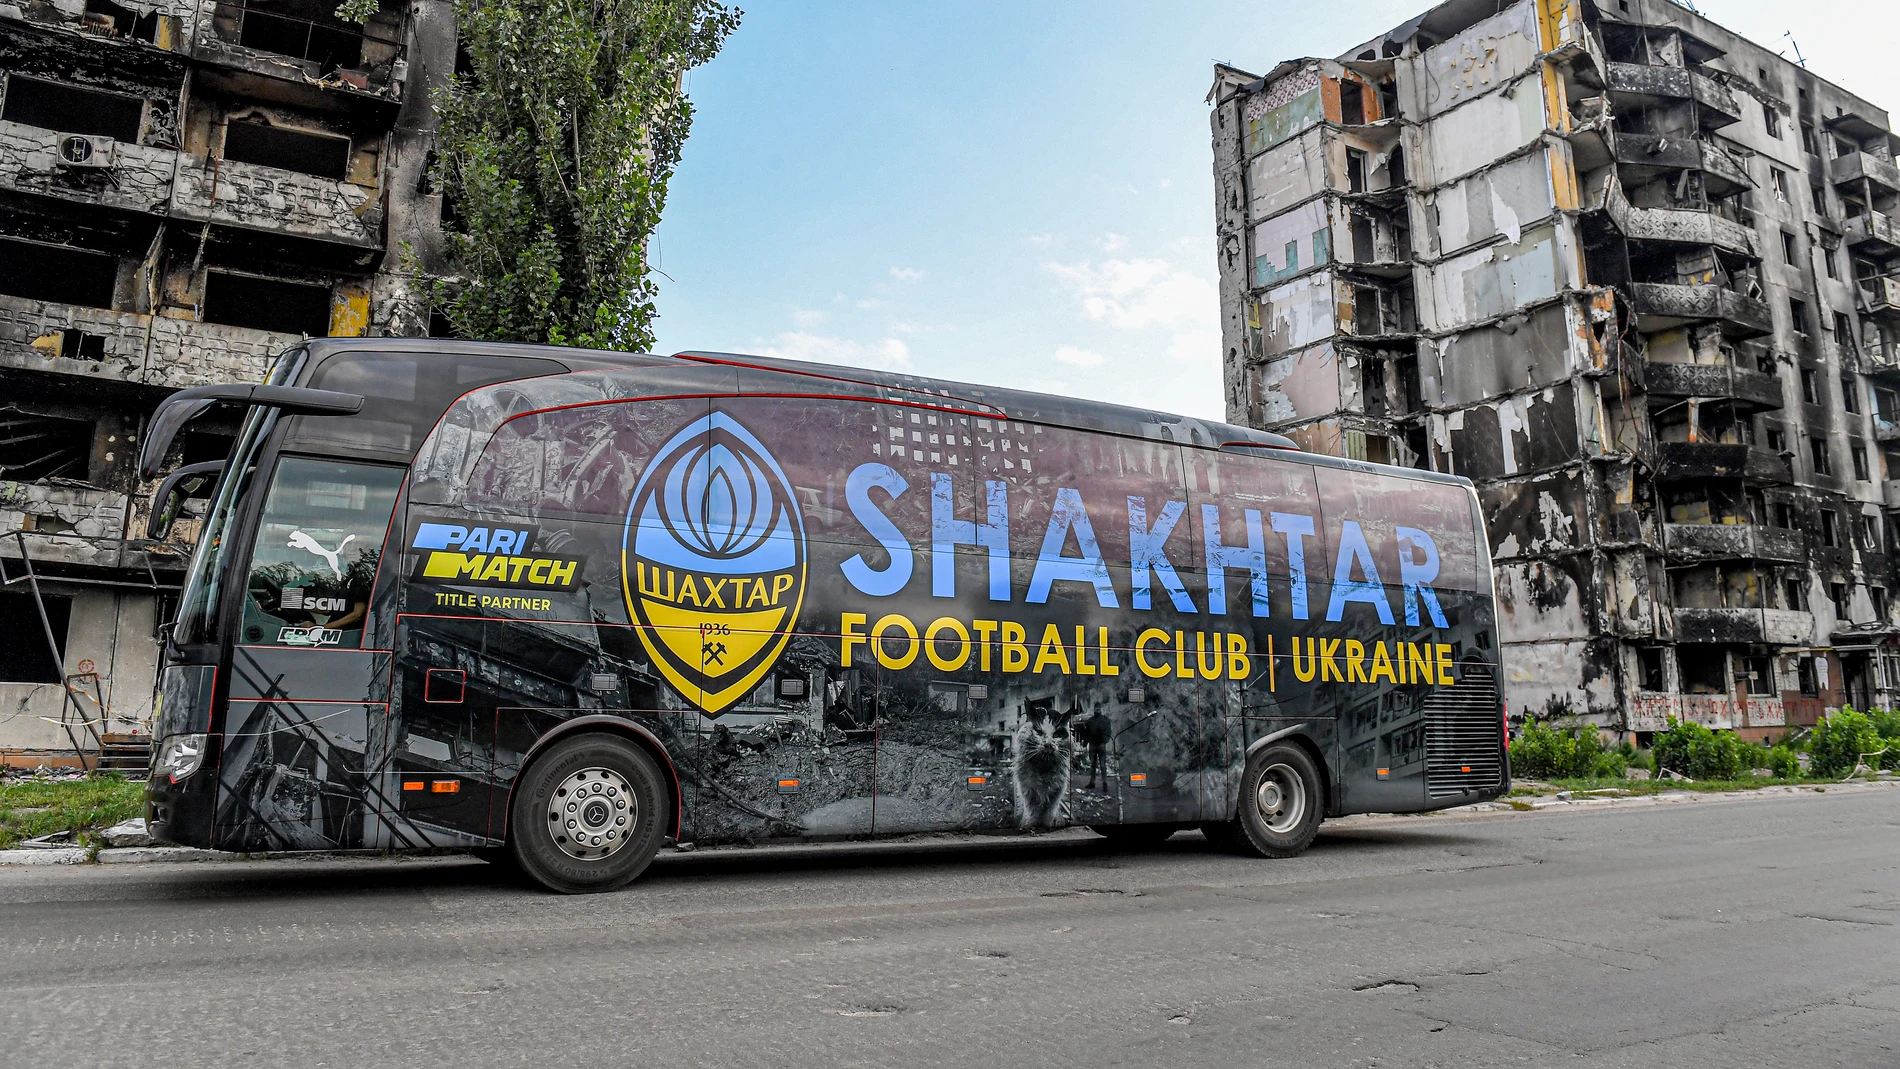 autobus shakhtar muestra crudeza guerra kiev 98 - Futbol en la guerra, Ucrania reinicia su liga